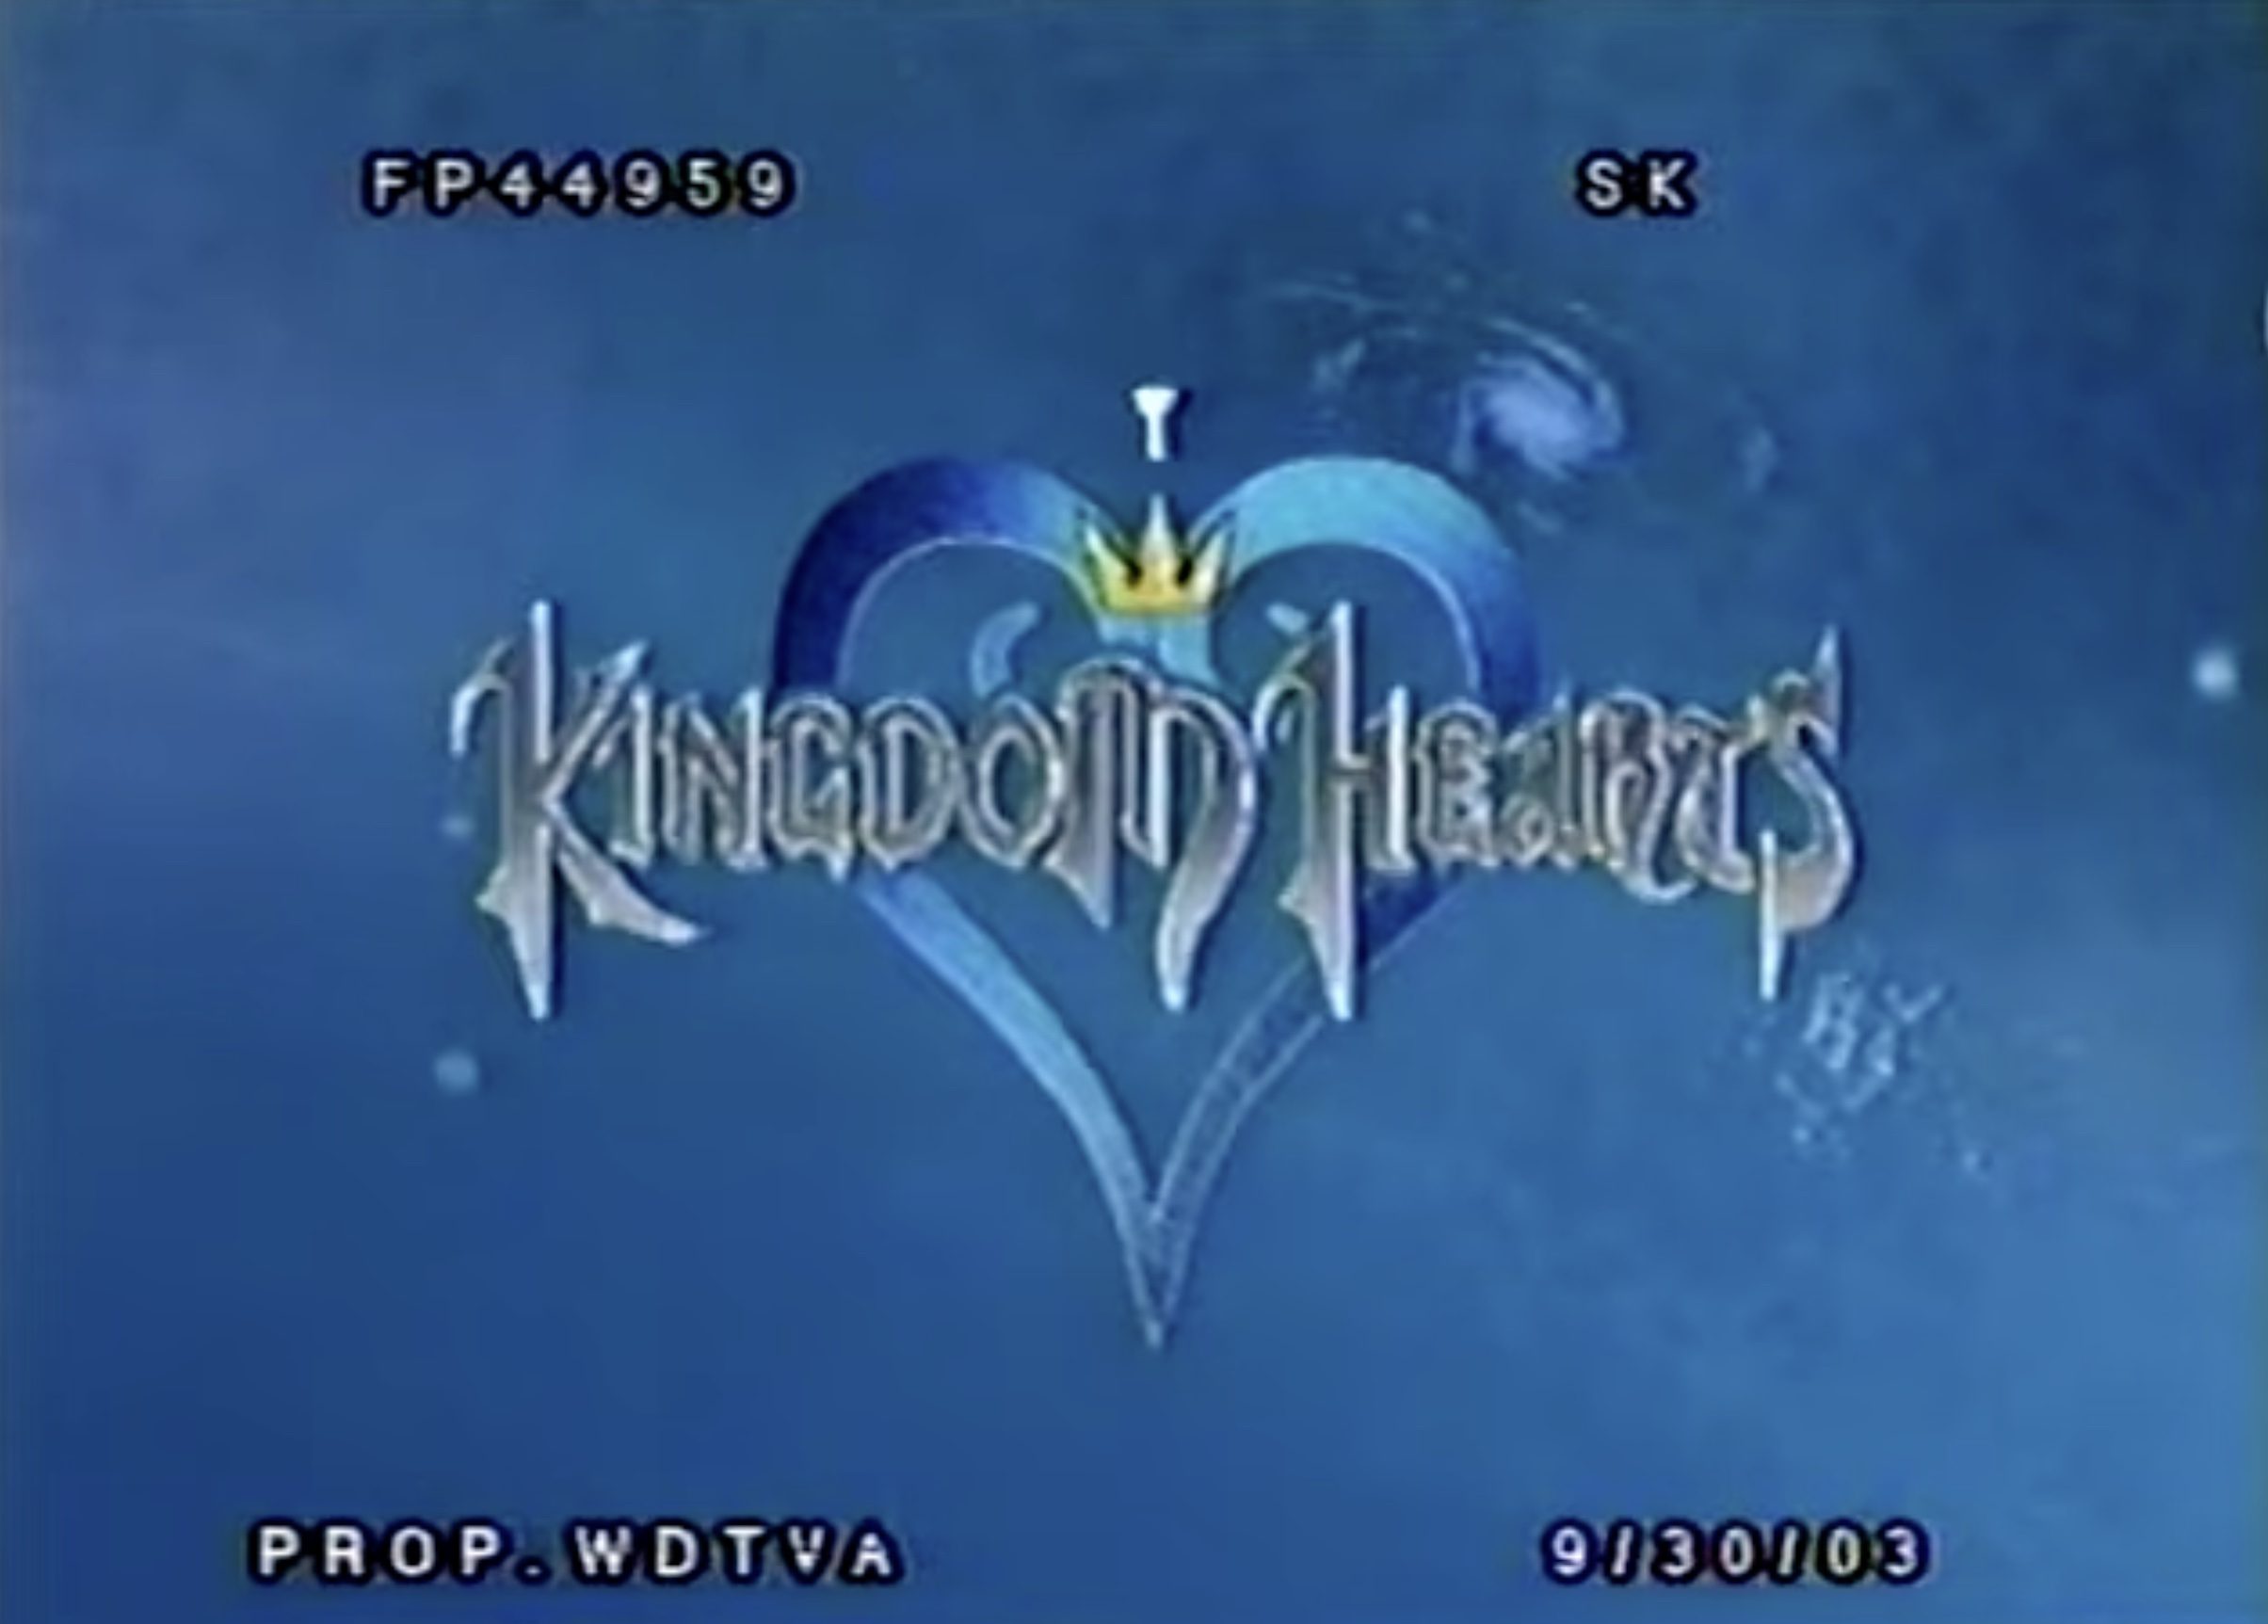 Lost Kingdom Hearts